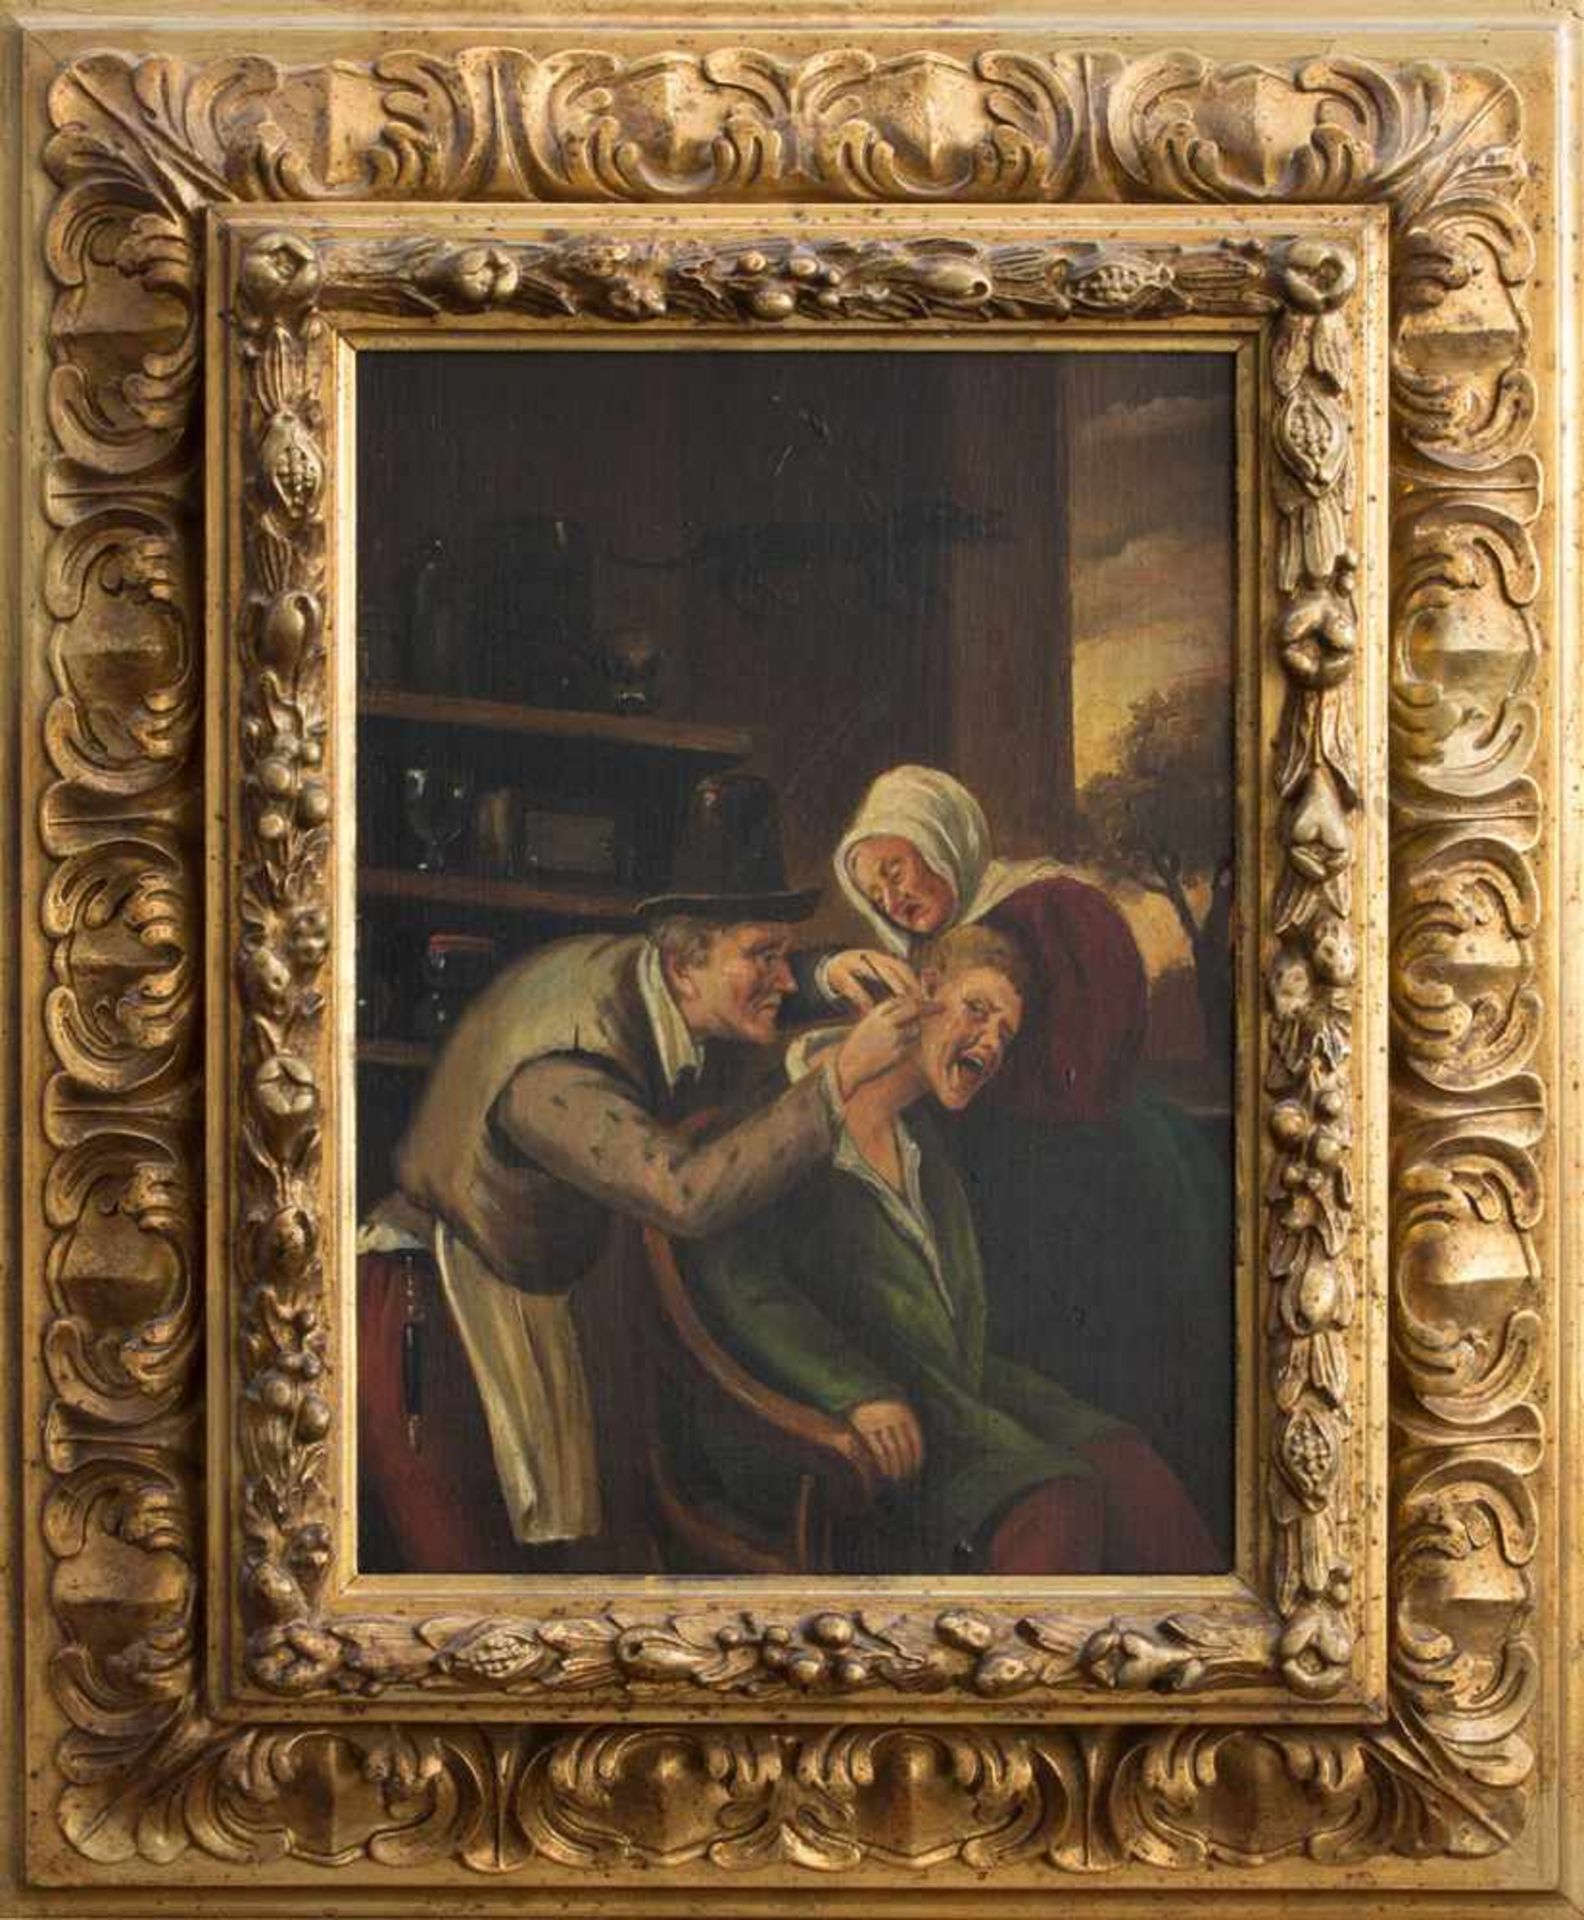 Grossmann (Genremaler des 19. Jh.) Beim Bader Öl/ Holz, 30 x 21 cm, gerahmt, unsigniert, verso